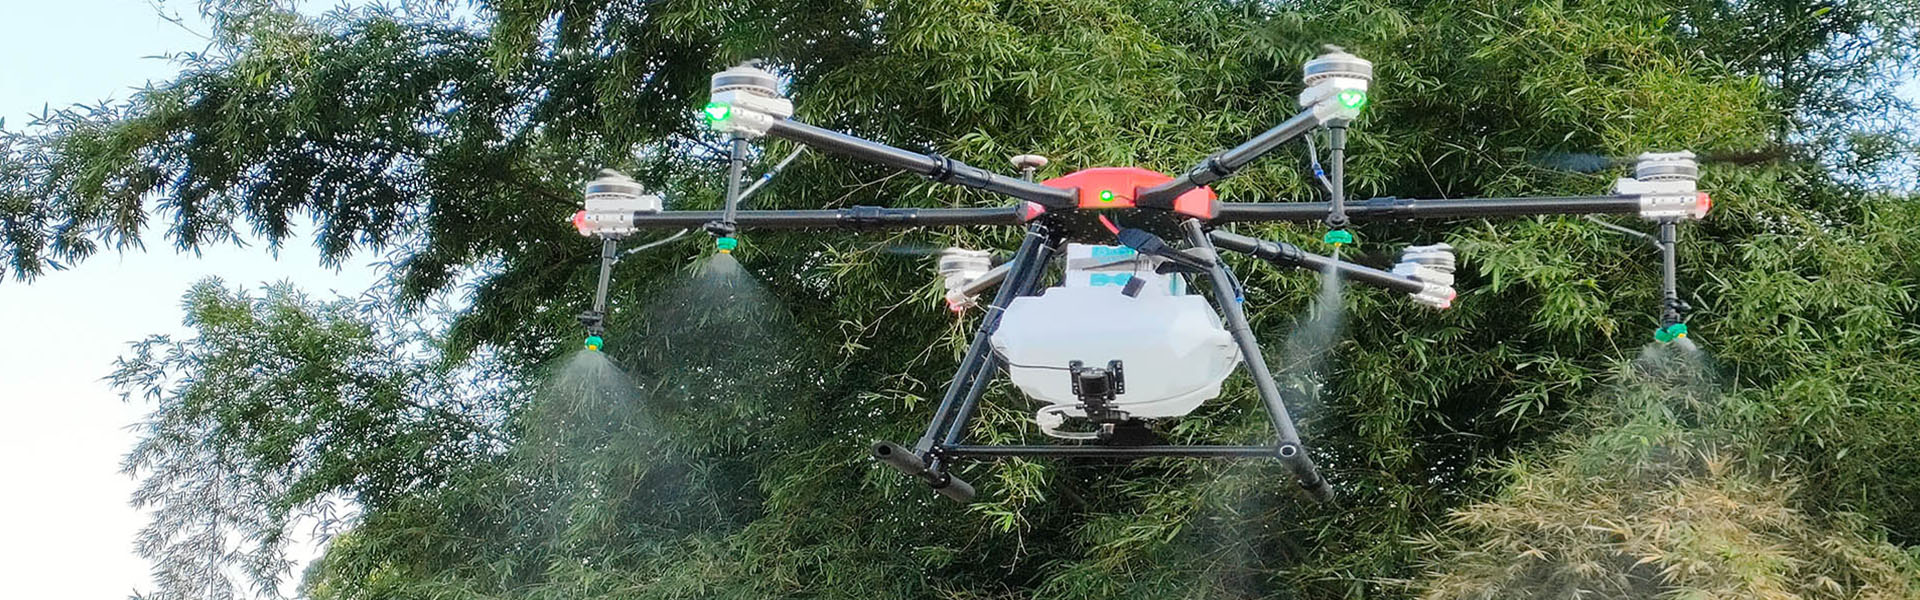 UEAV agricole, UAV de protection végétale, accessoires d\'UAV agricoles,Shenzhen fnyuav technology co.LTD